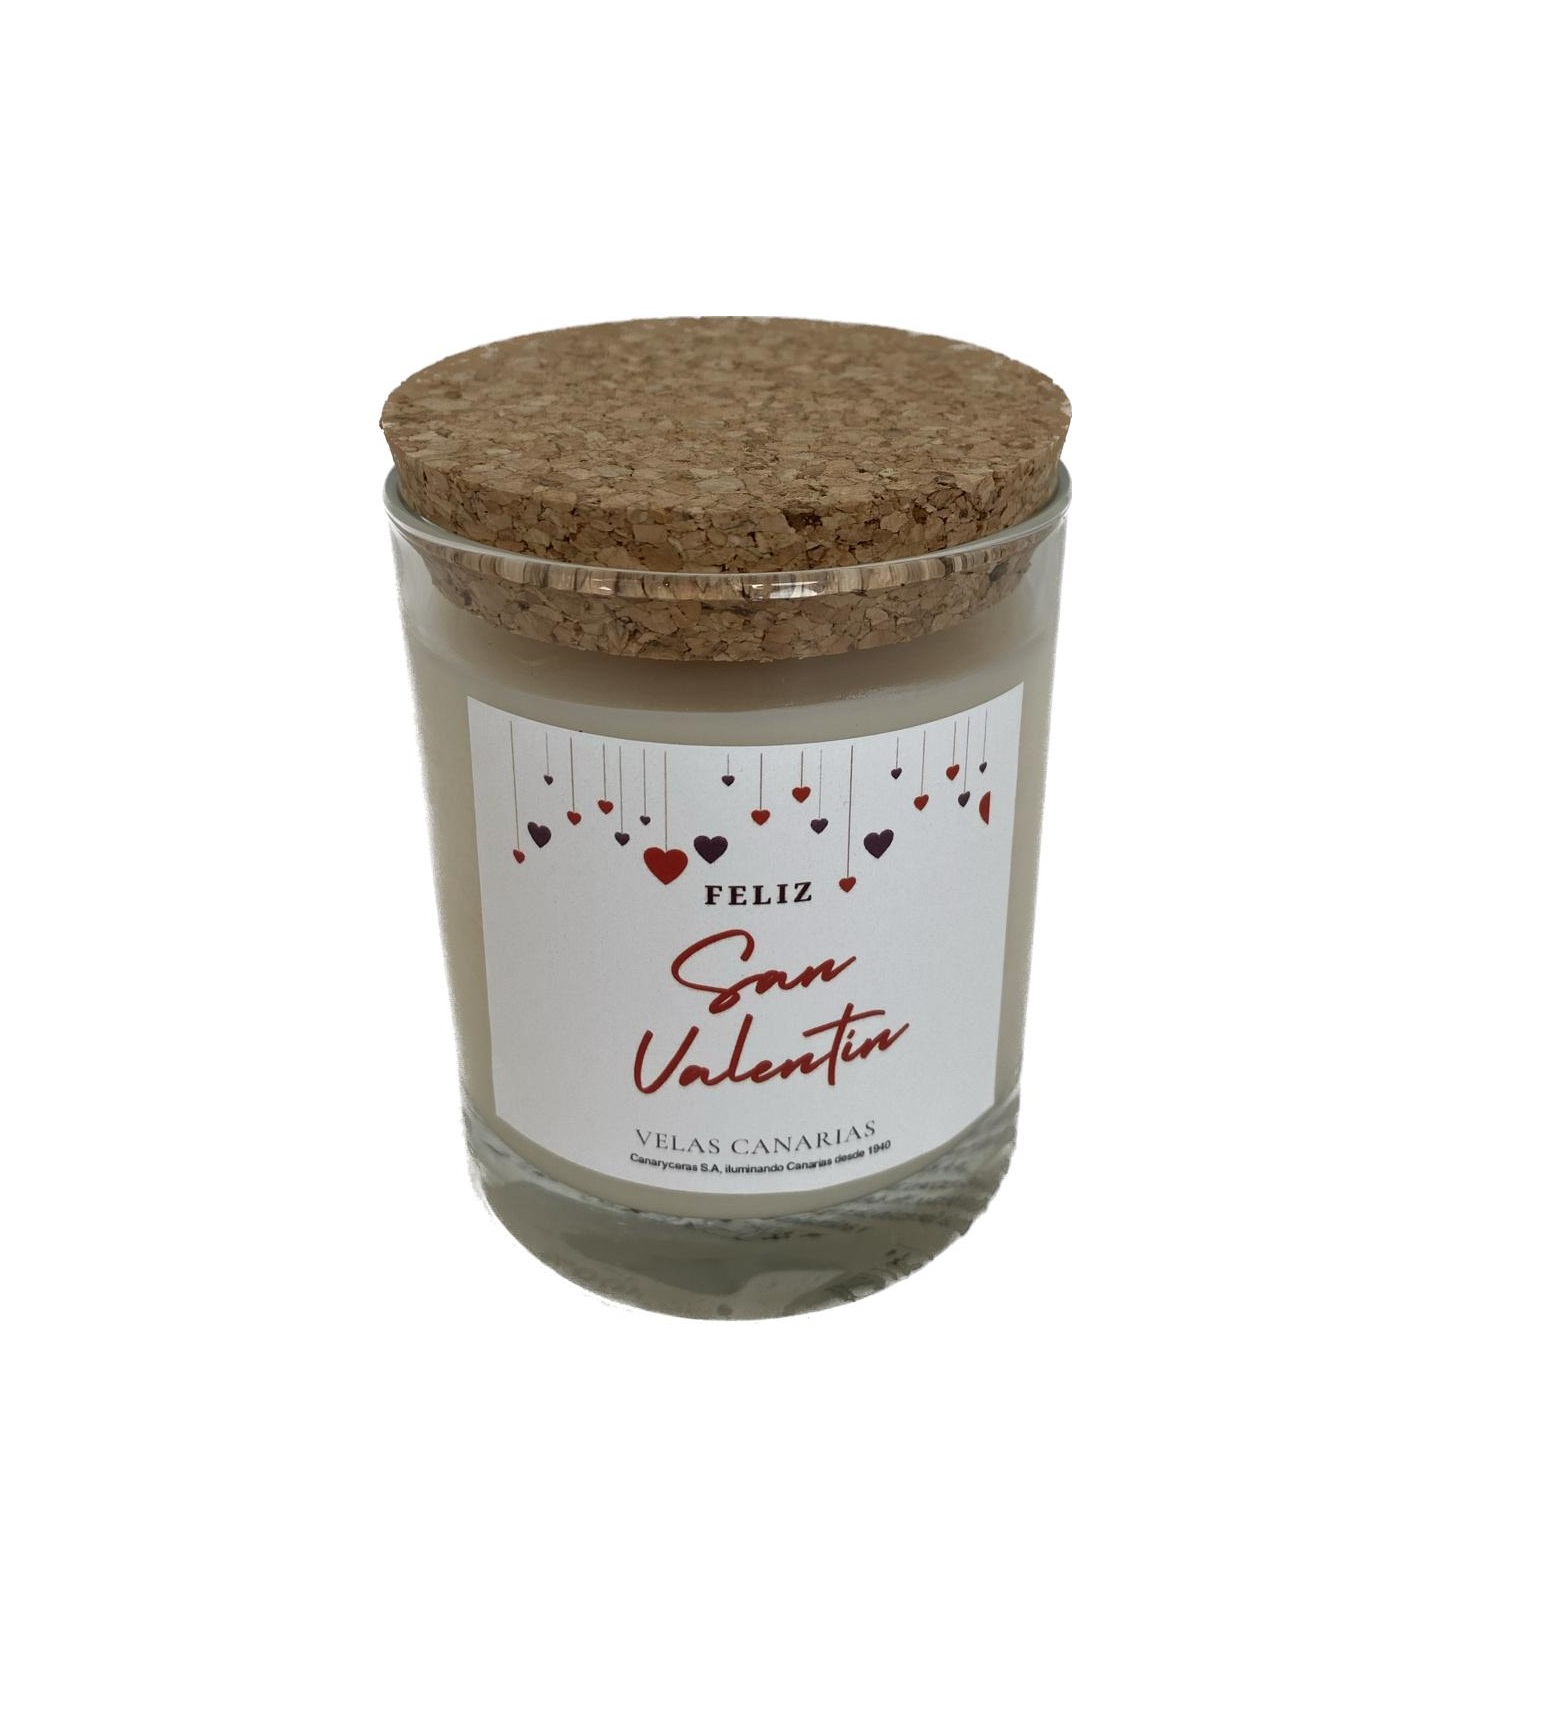 Imagen destacada de “San valentín - Vela aromática de cera de soja 150 gr”